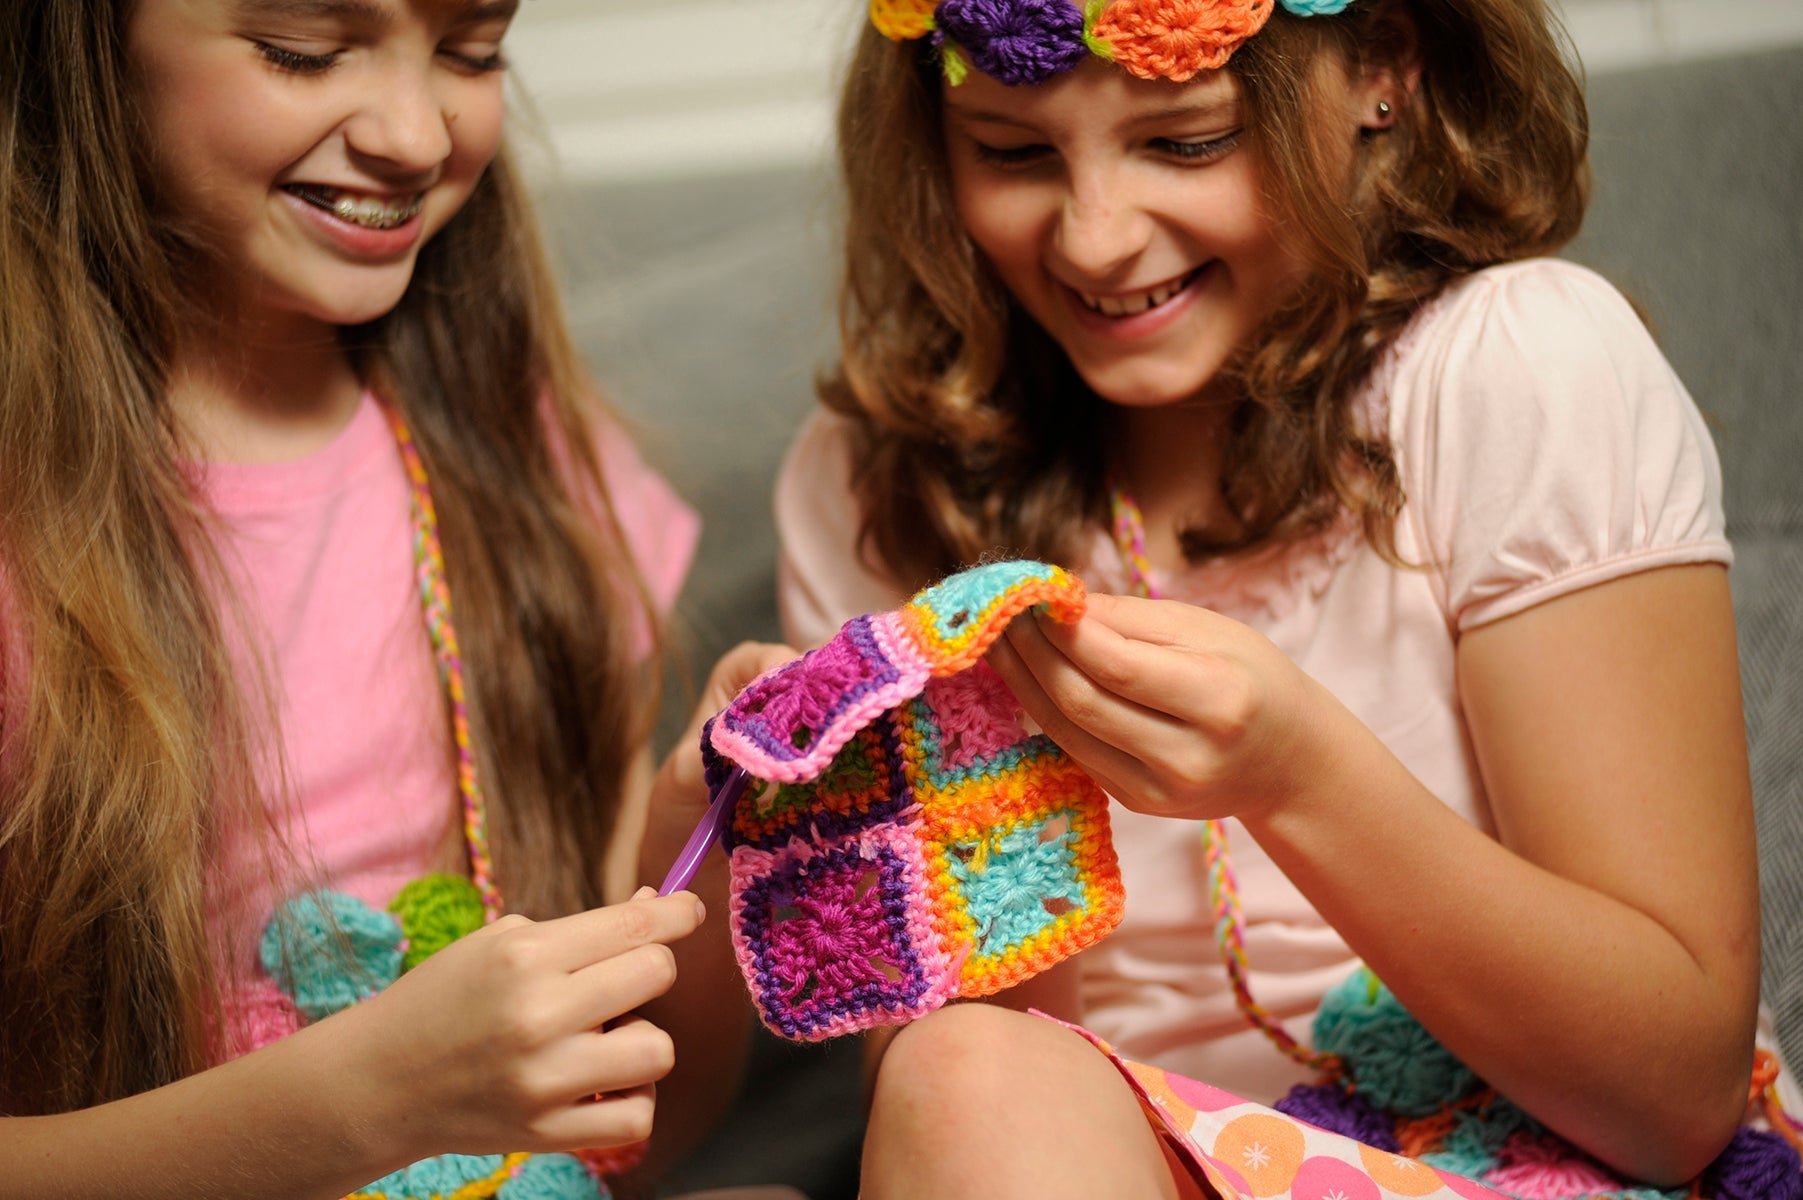  HOMQYTE Crochet Kit for Beginners 4 PCS Crochet